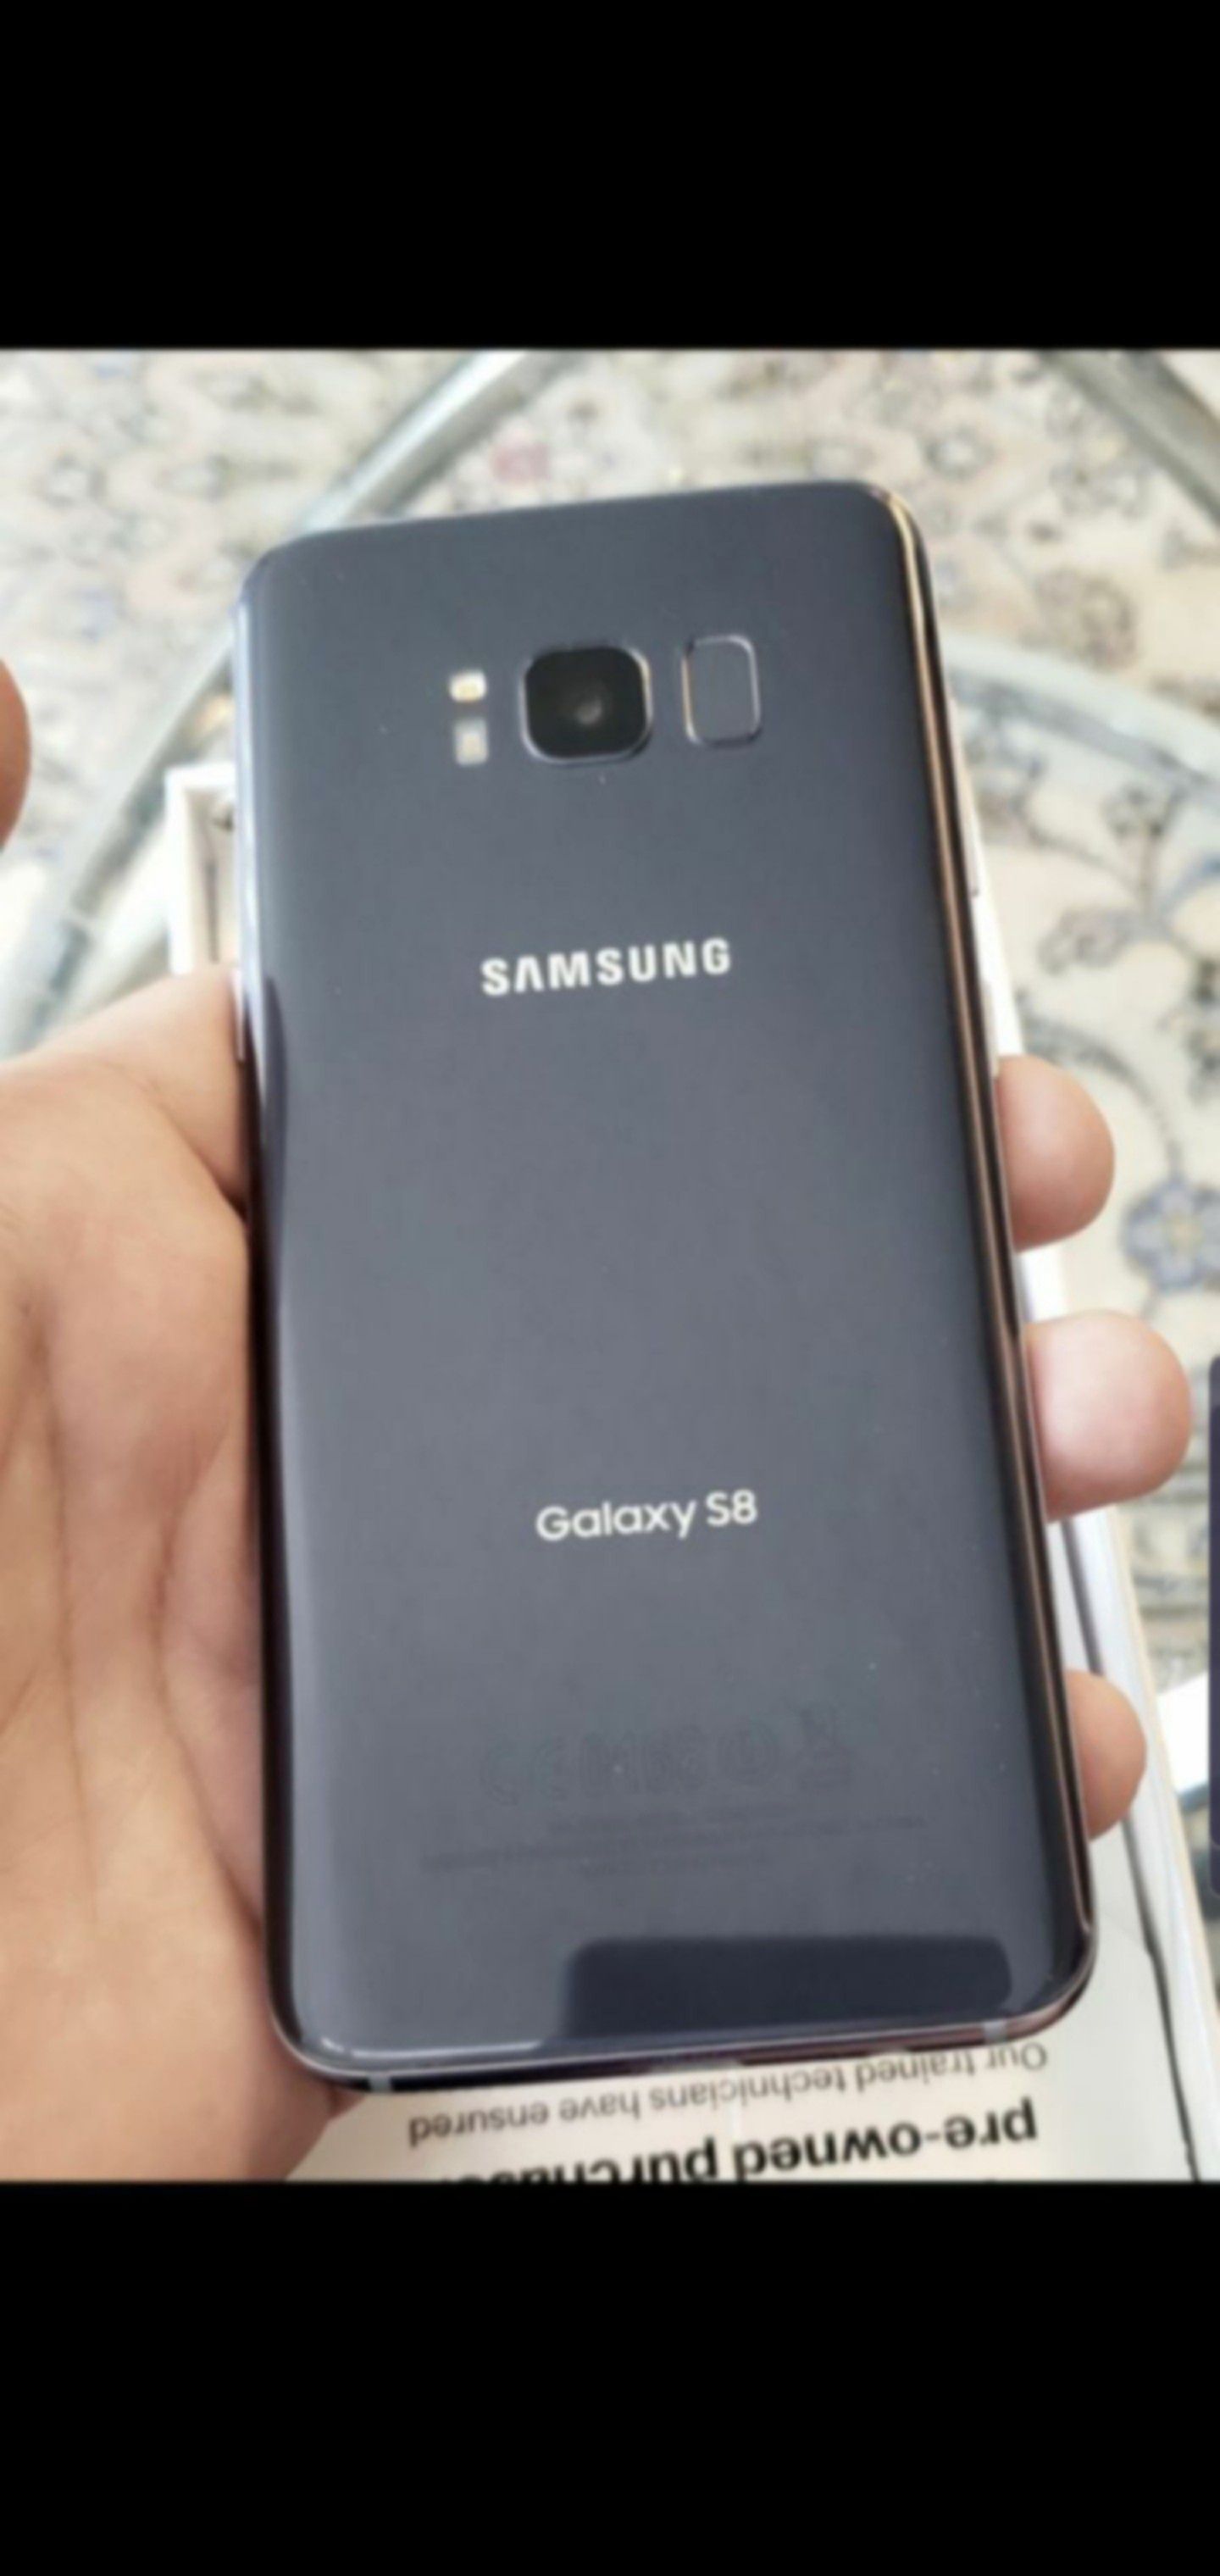 New Galaxy S8 Samsung Unlocked Liberado DESBLOQUEADO T-Mobile Metro Att Cricket